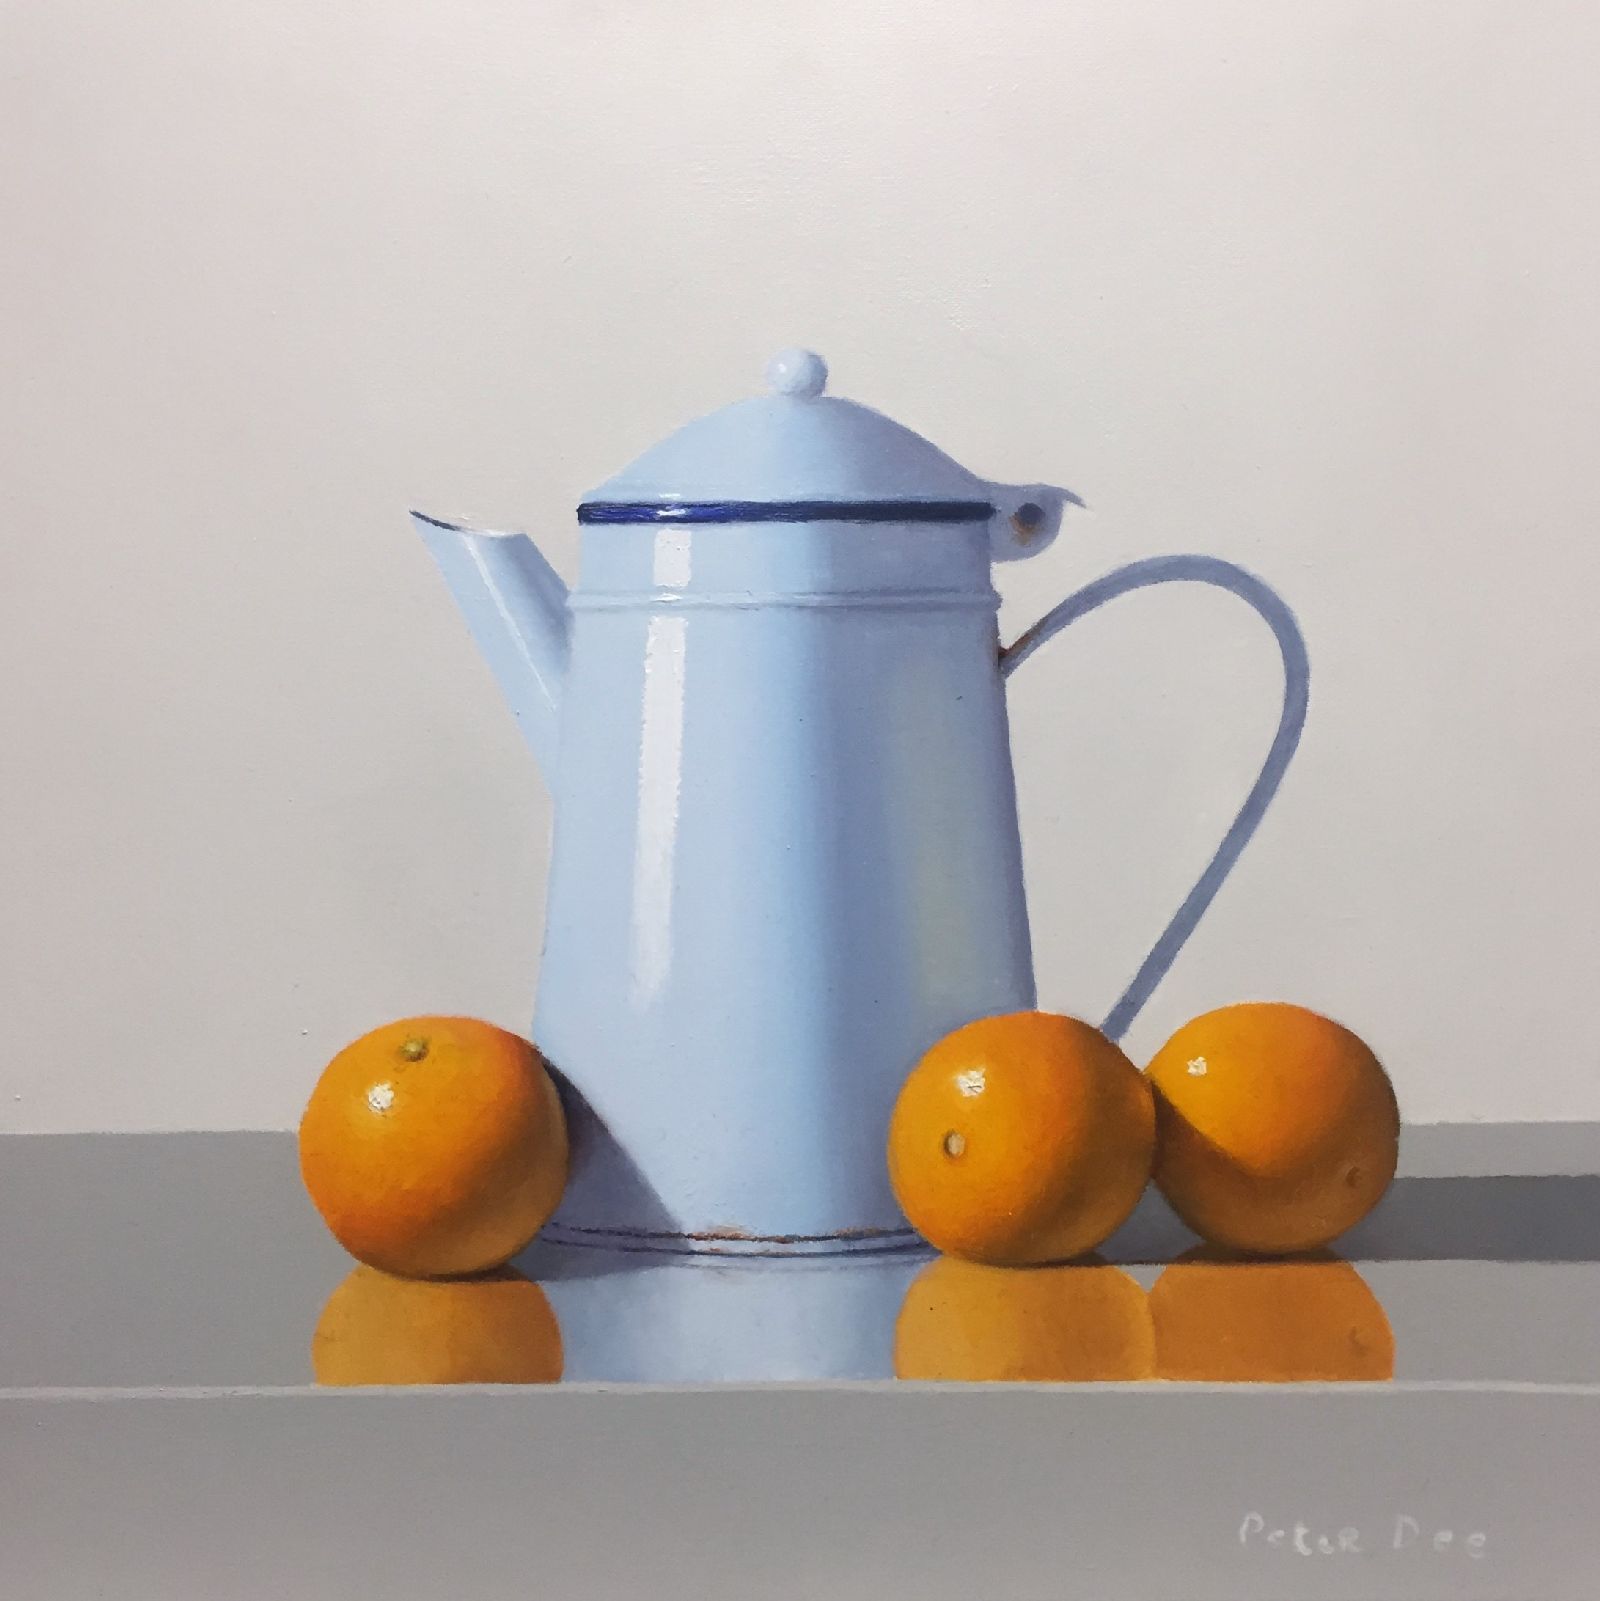 Peter Dee - Vintage Jug with Oranges